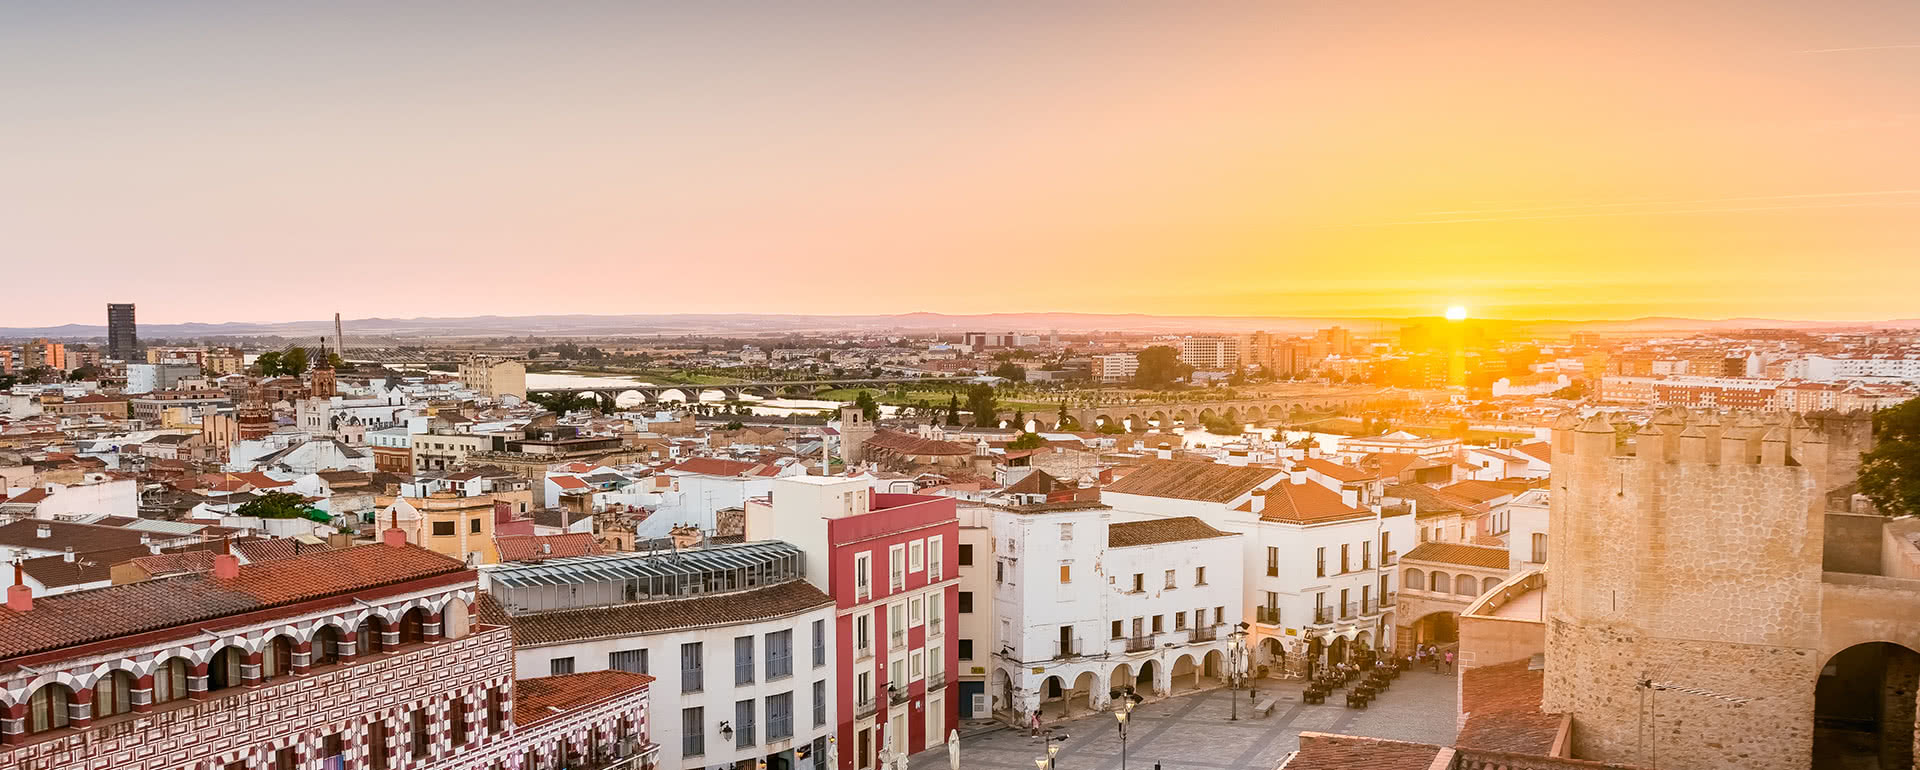 Coverbild von Badajoz